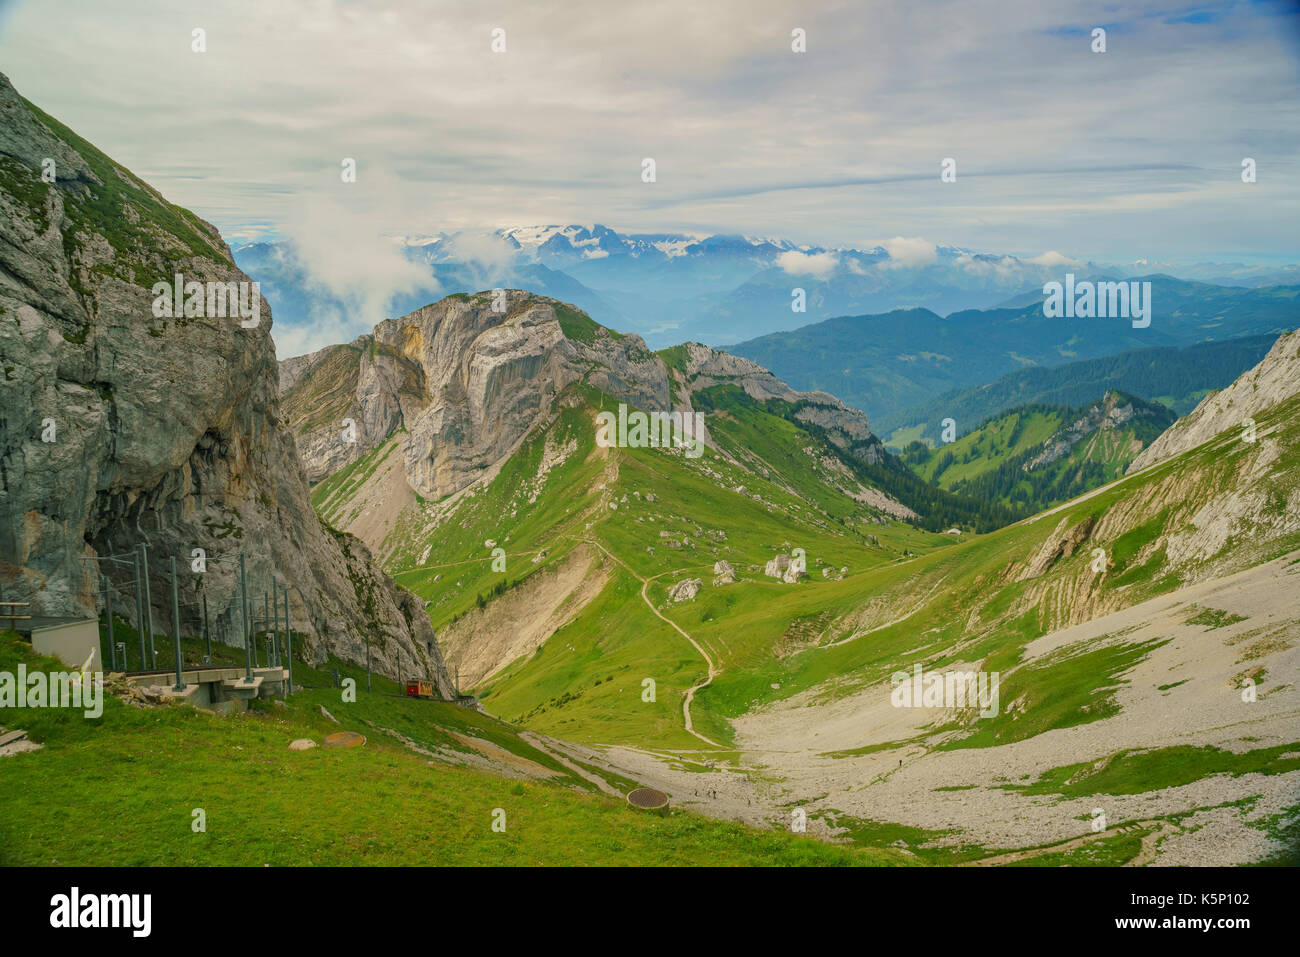 Awesome landscape over Mount Pilatus, Lucerne, Switzerland Stock Photo